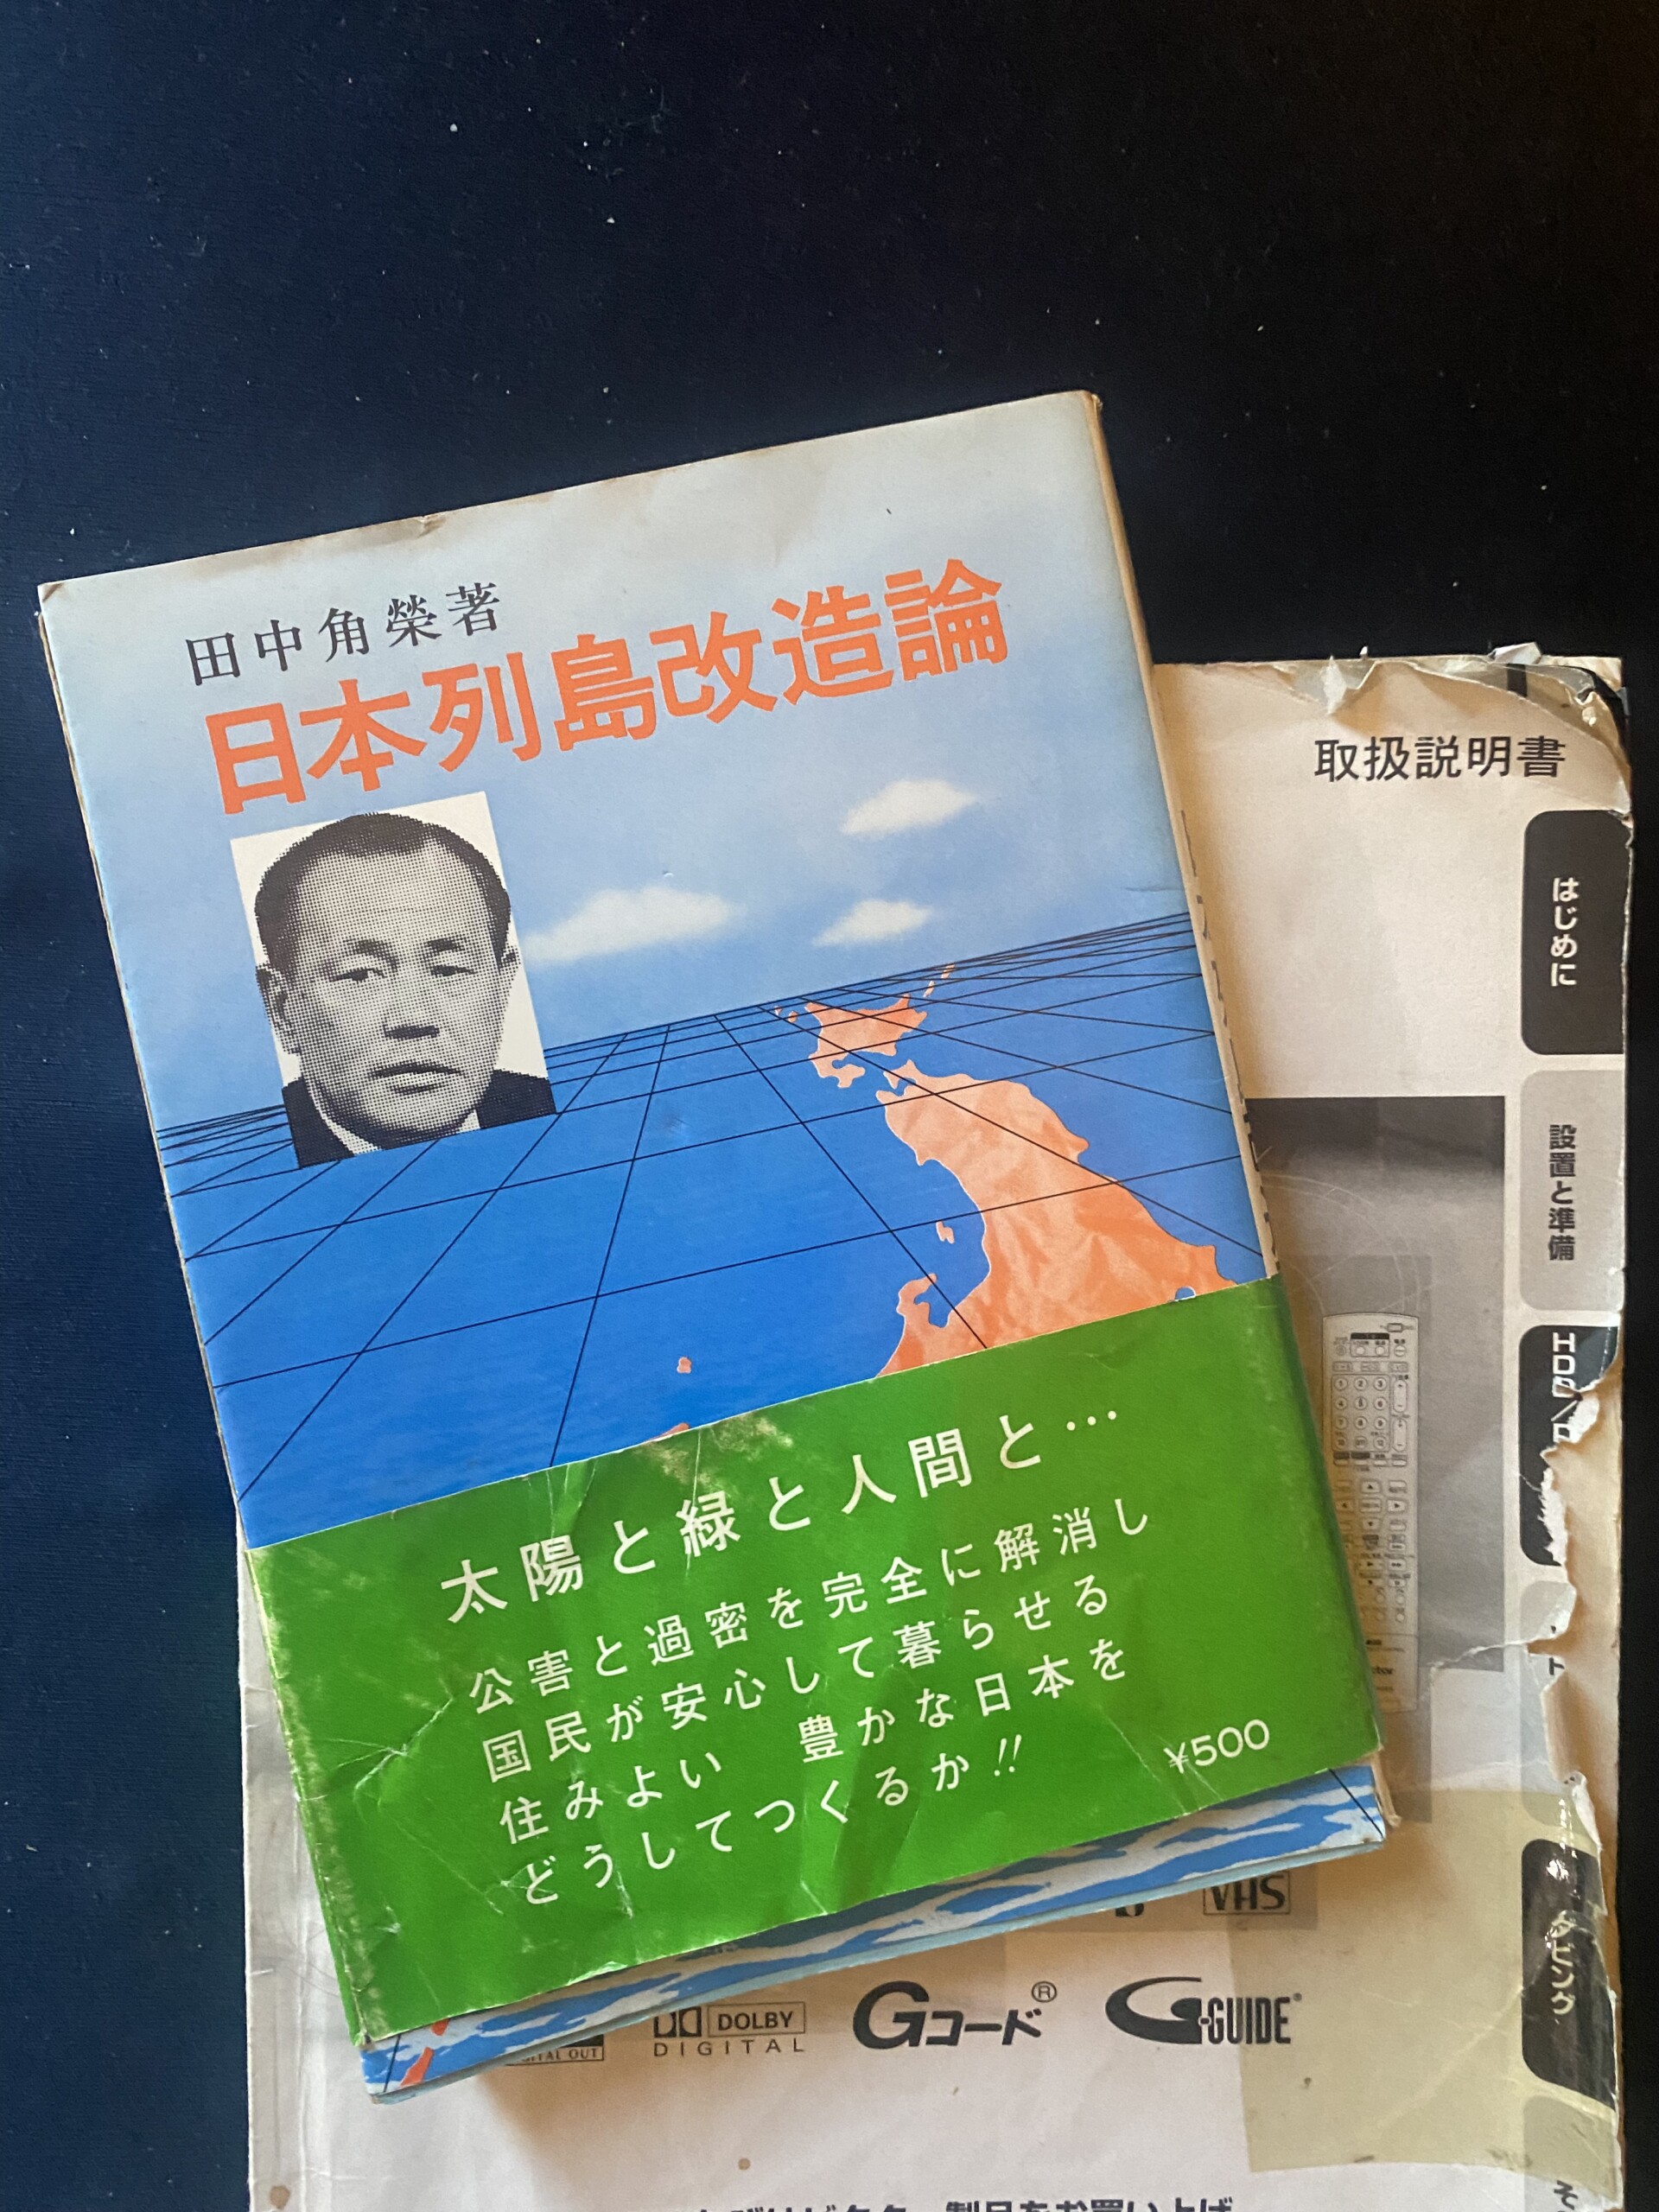 日本列島改造論」が日本の衰退を映し出す 田中角栄を乗り越えられない 